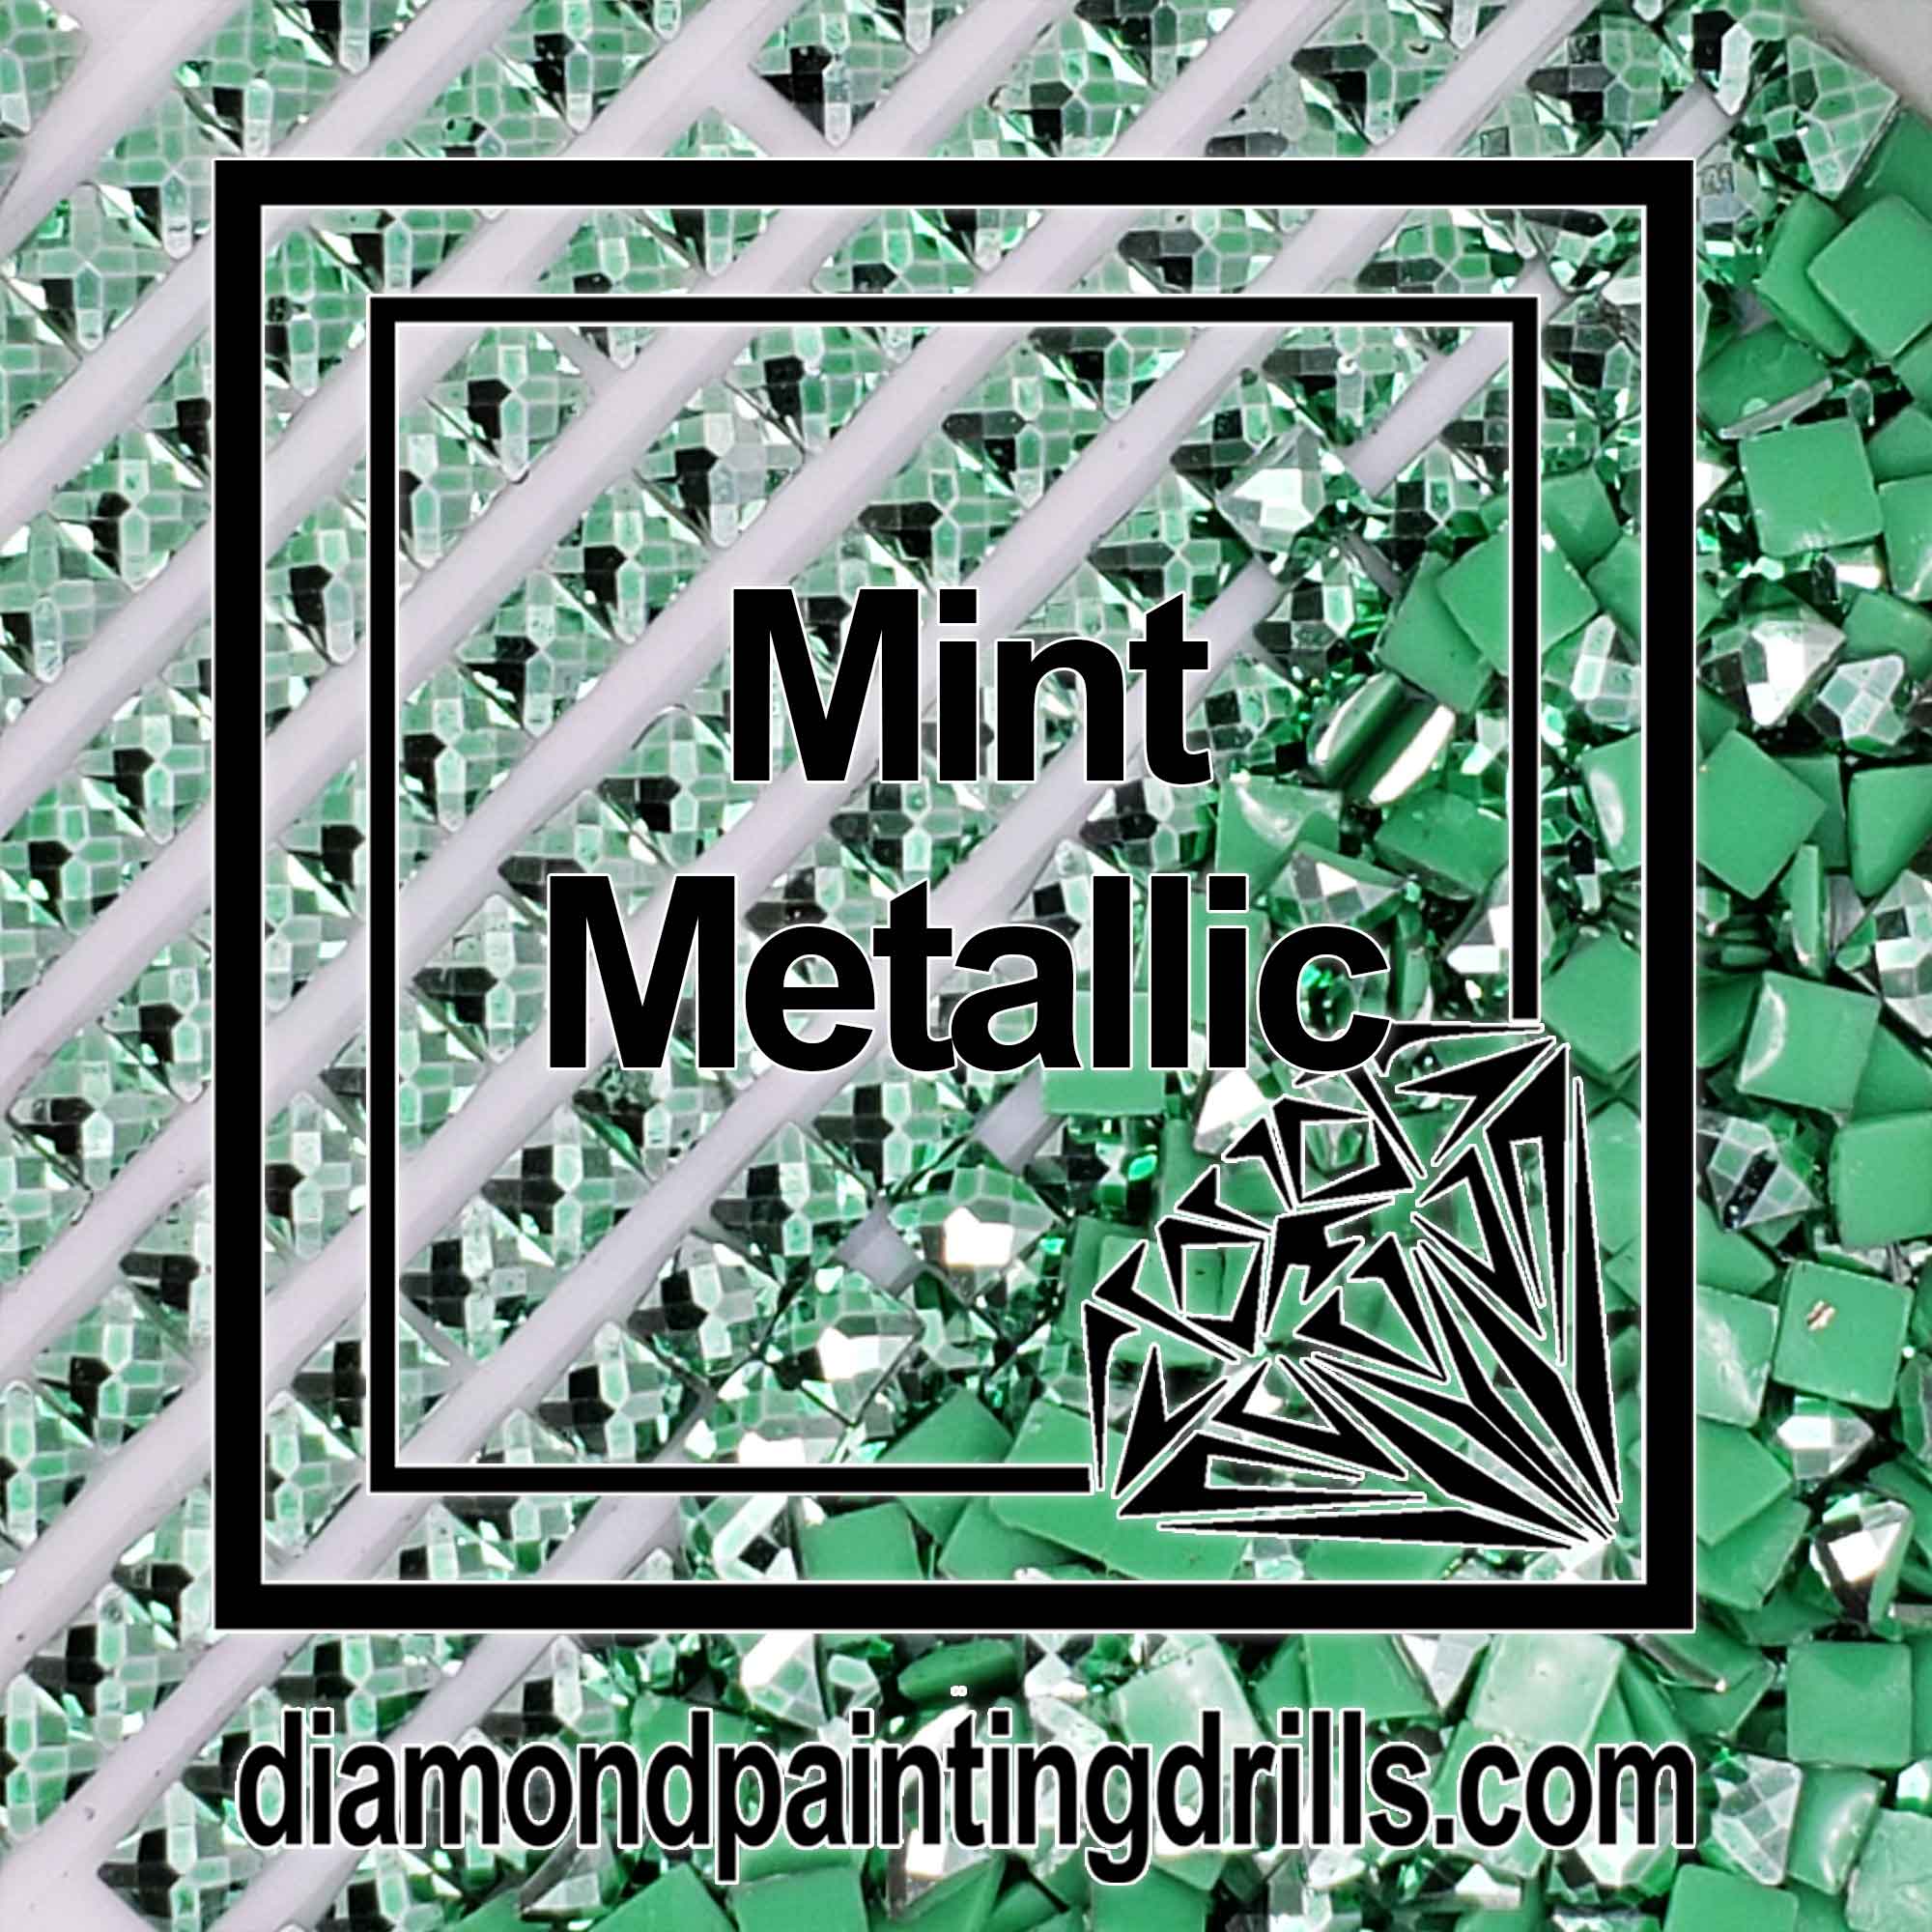 Mint Metallic Drills - Square - Diamond Painting Drills